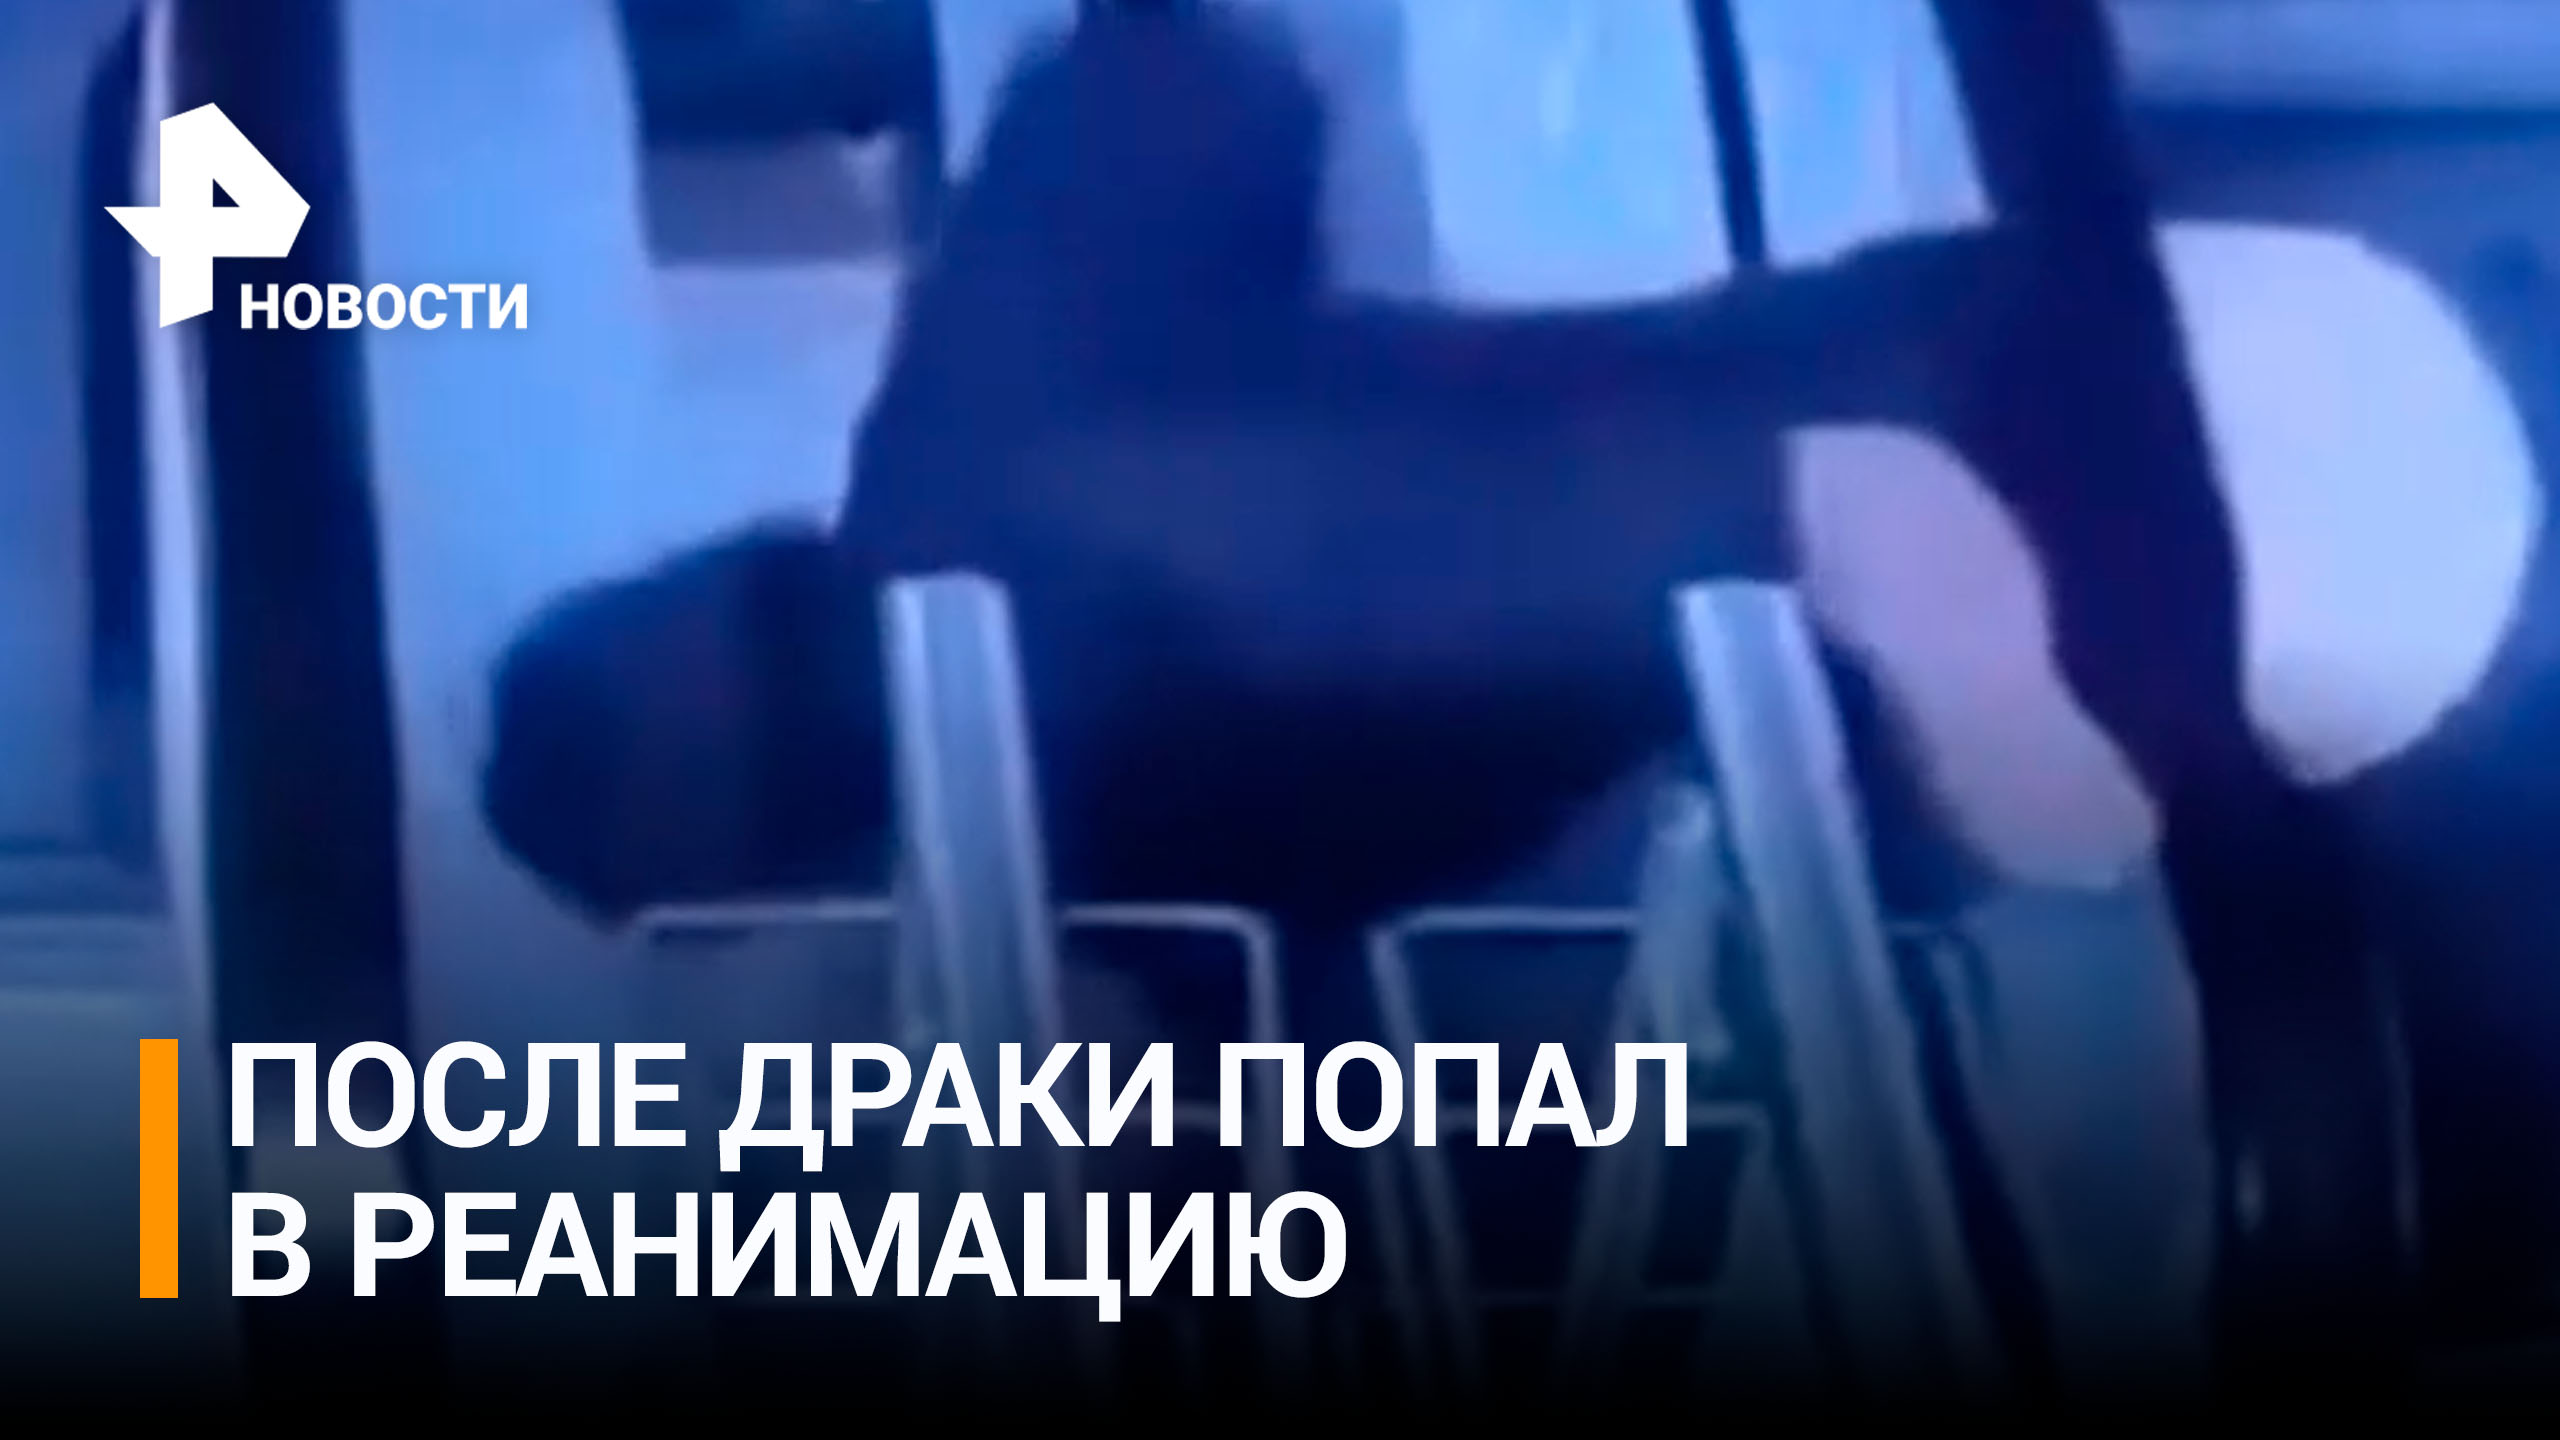 Посетитель ТЦ в Петербурге в ходе драки упал с 3-го этажа между эскалаторами / РЕН Новости